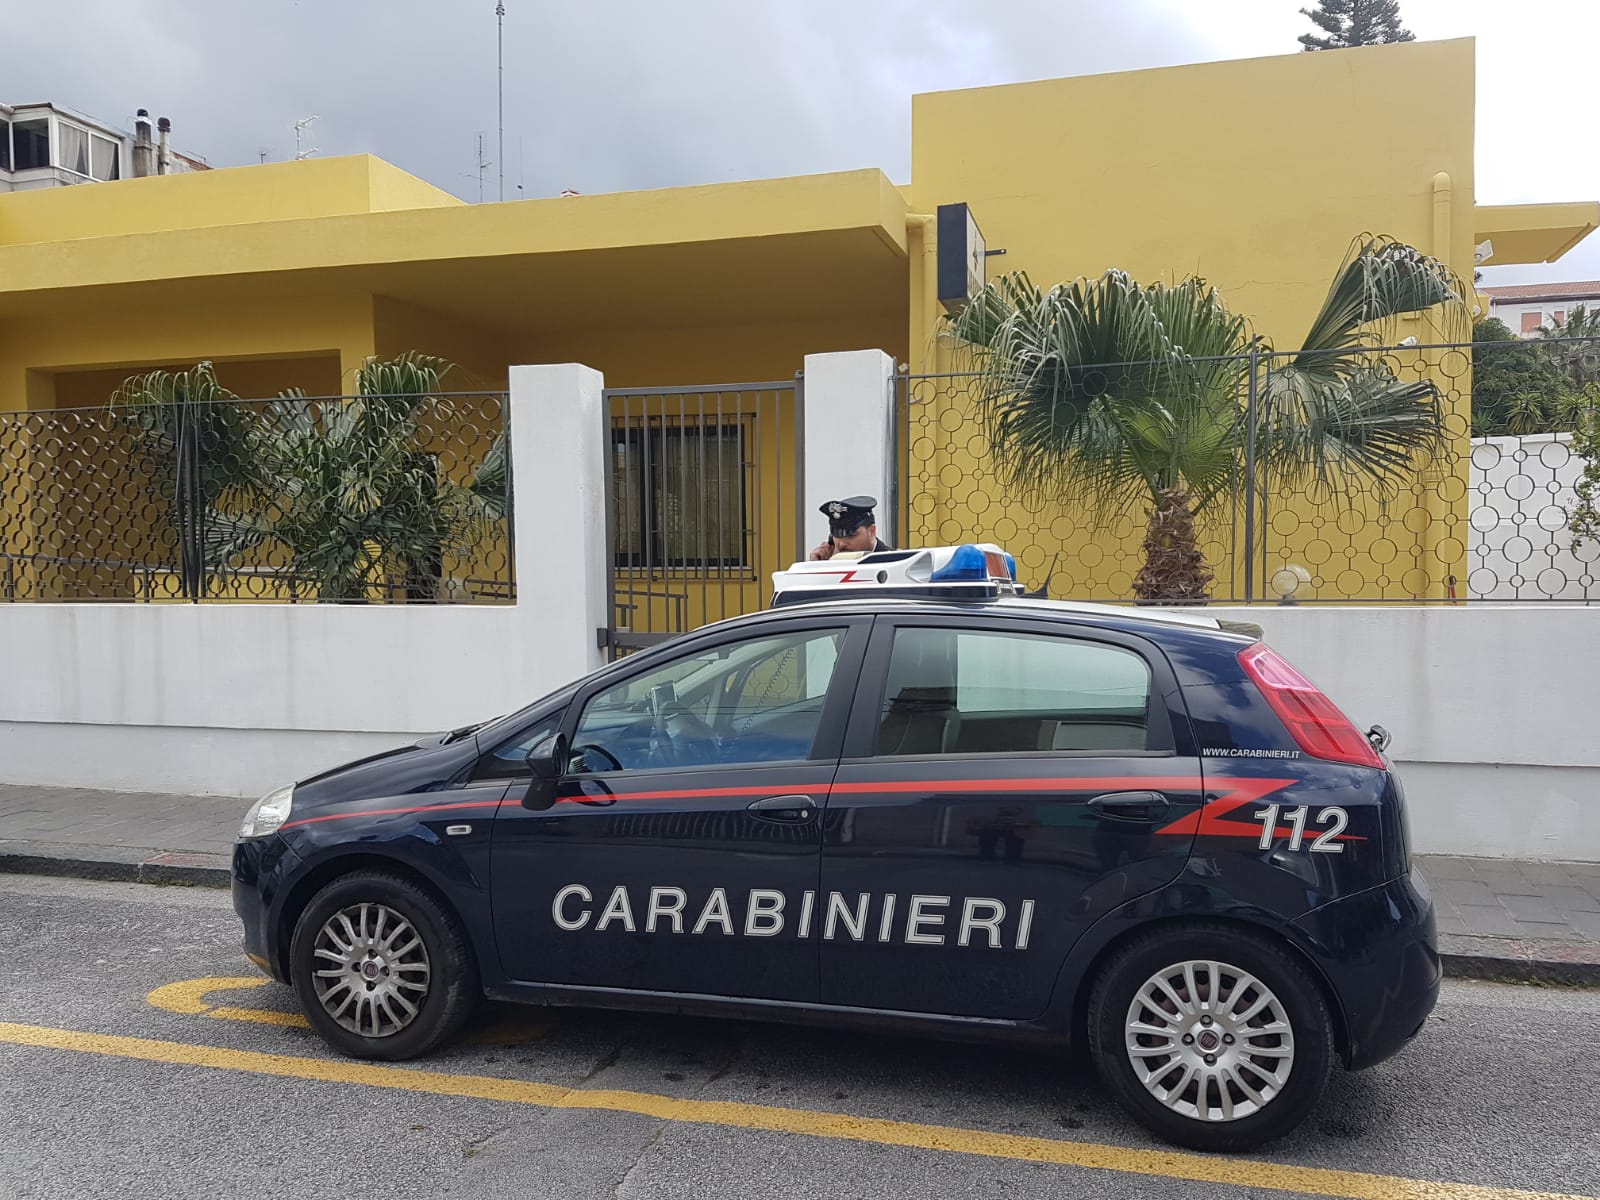 San Filippo del Mela. Carabinieri arrestano uomo per furto in abitazione